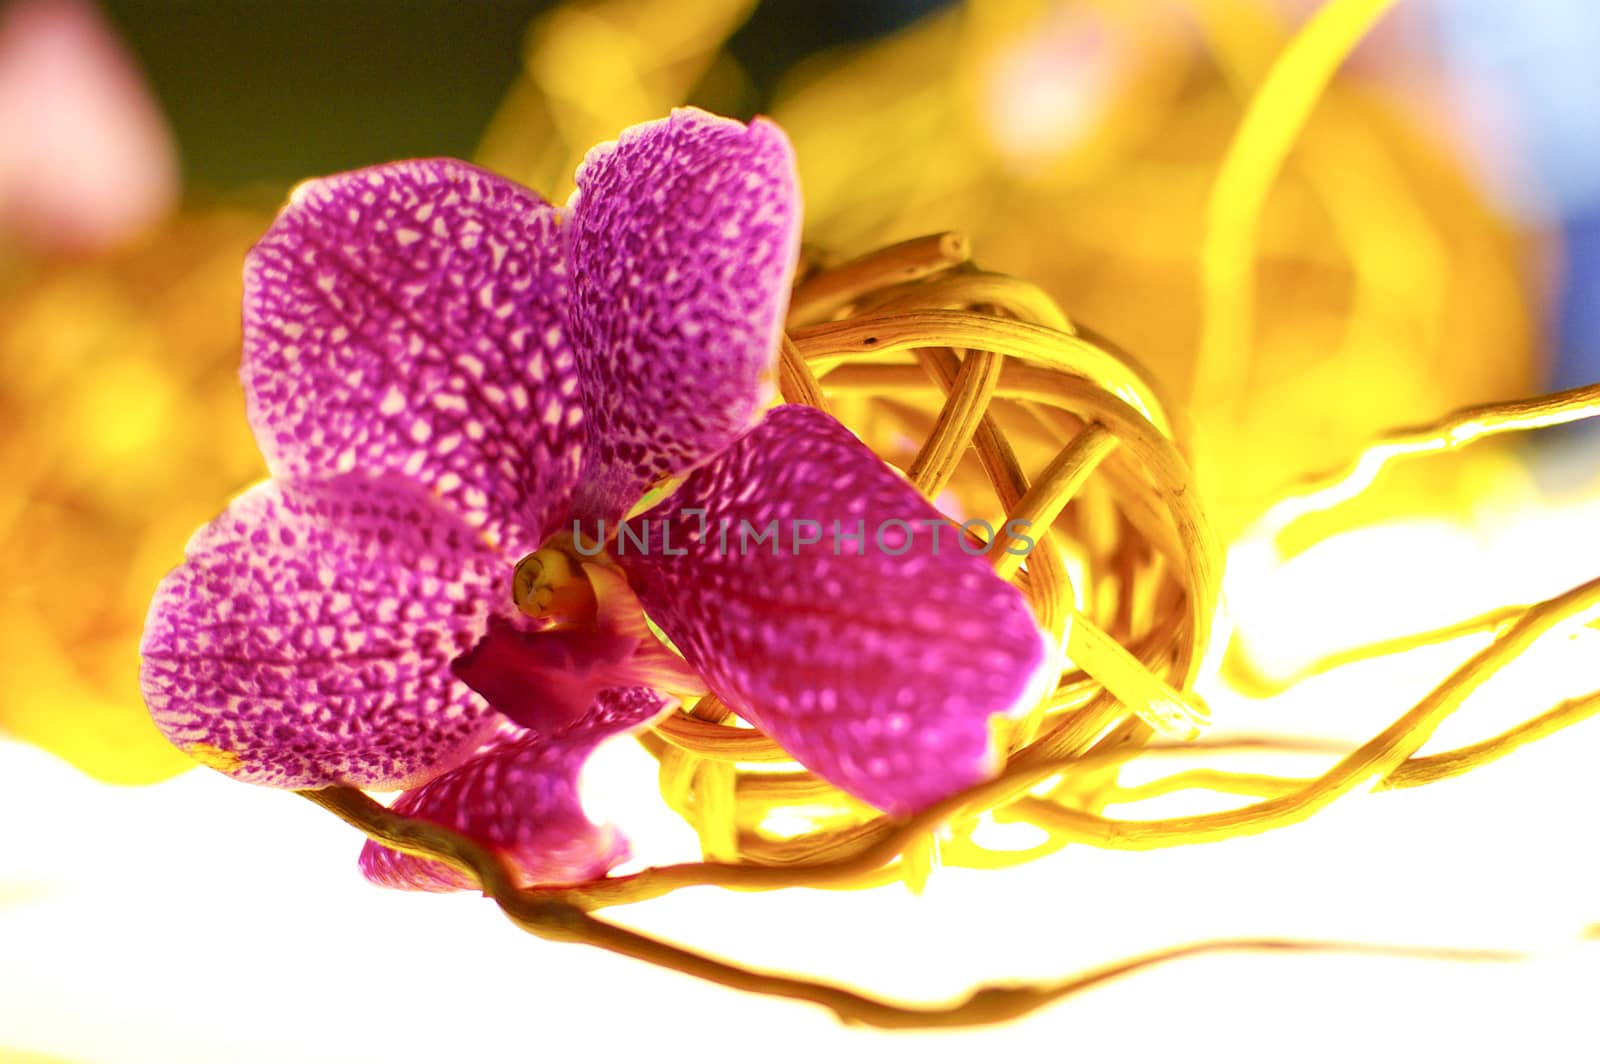 Beautiful purple orchid - phalaenopsis